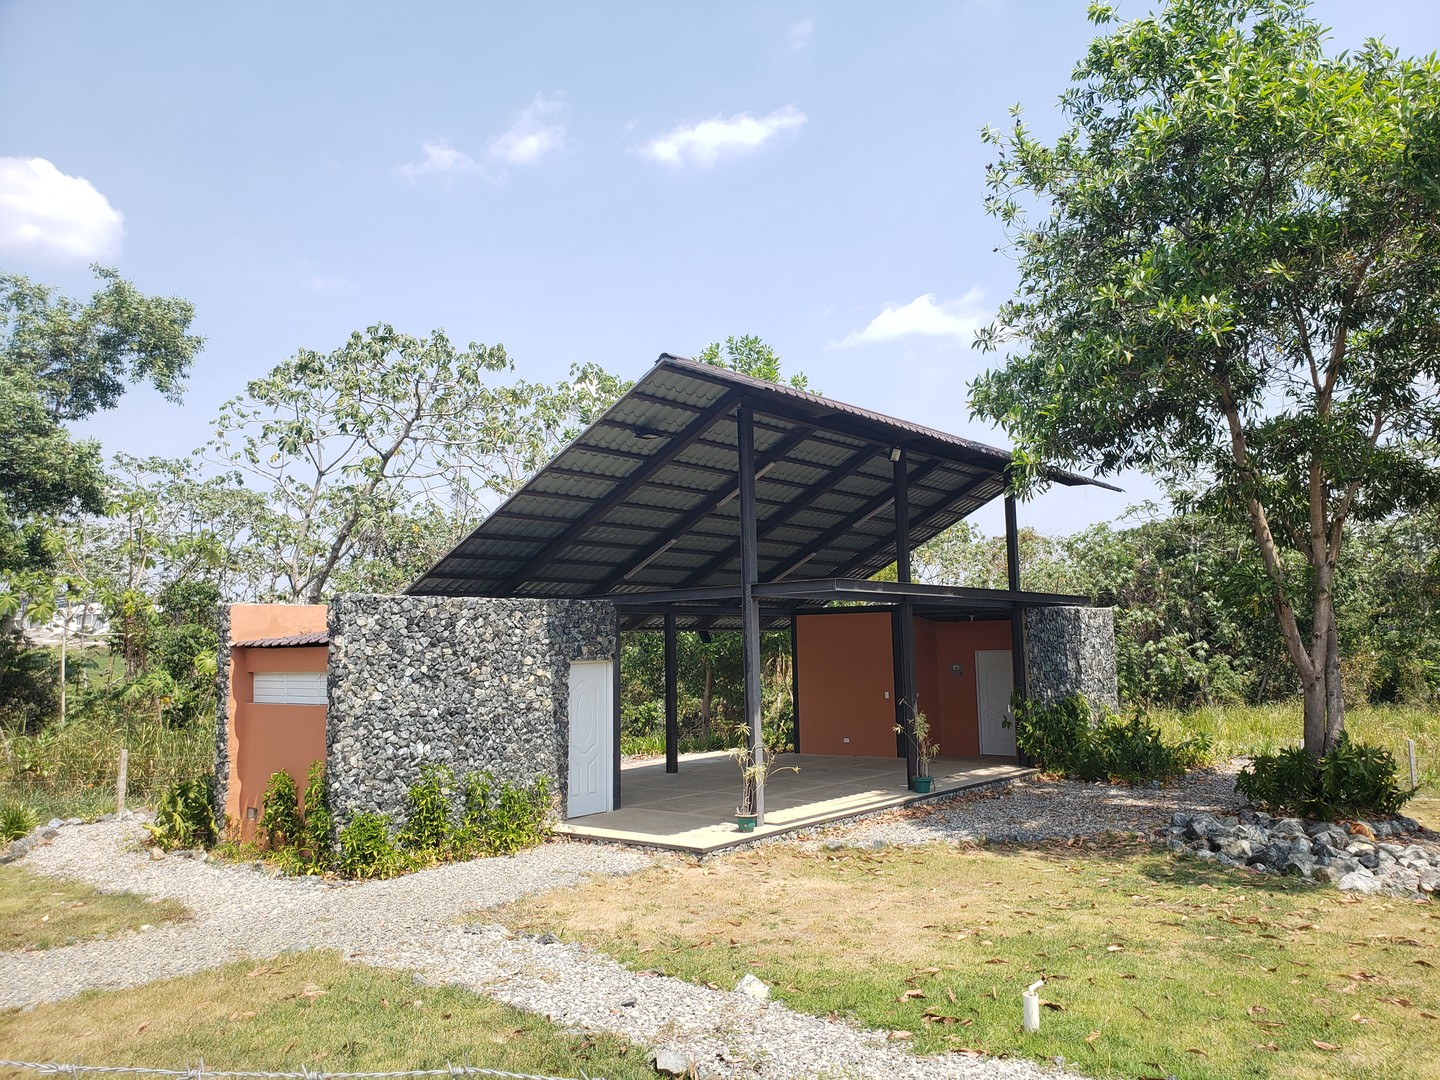 solares y terrenos - Venta de Solar  en la Comunidad Doña Amelia, Sector Sierra Prieta 5